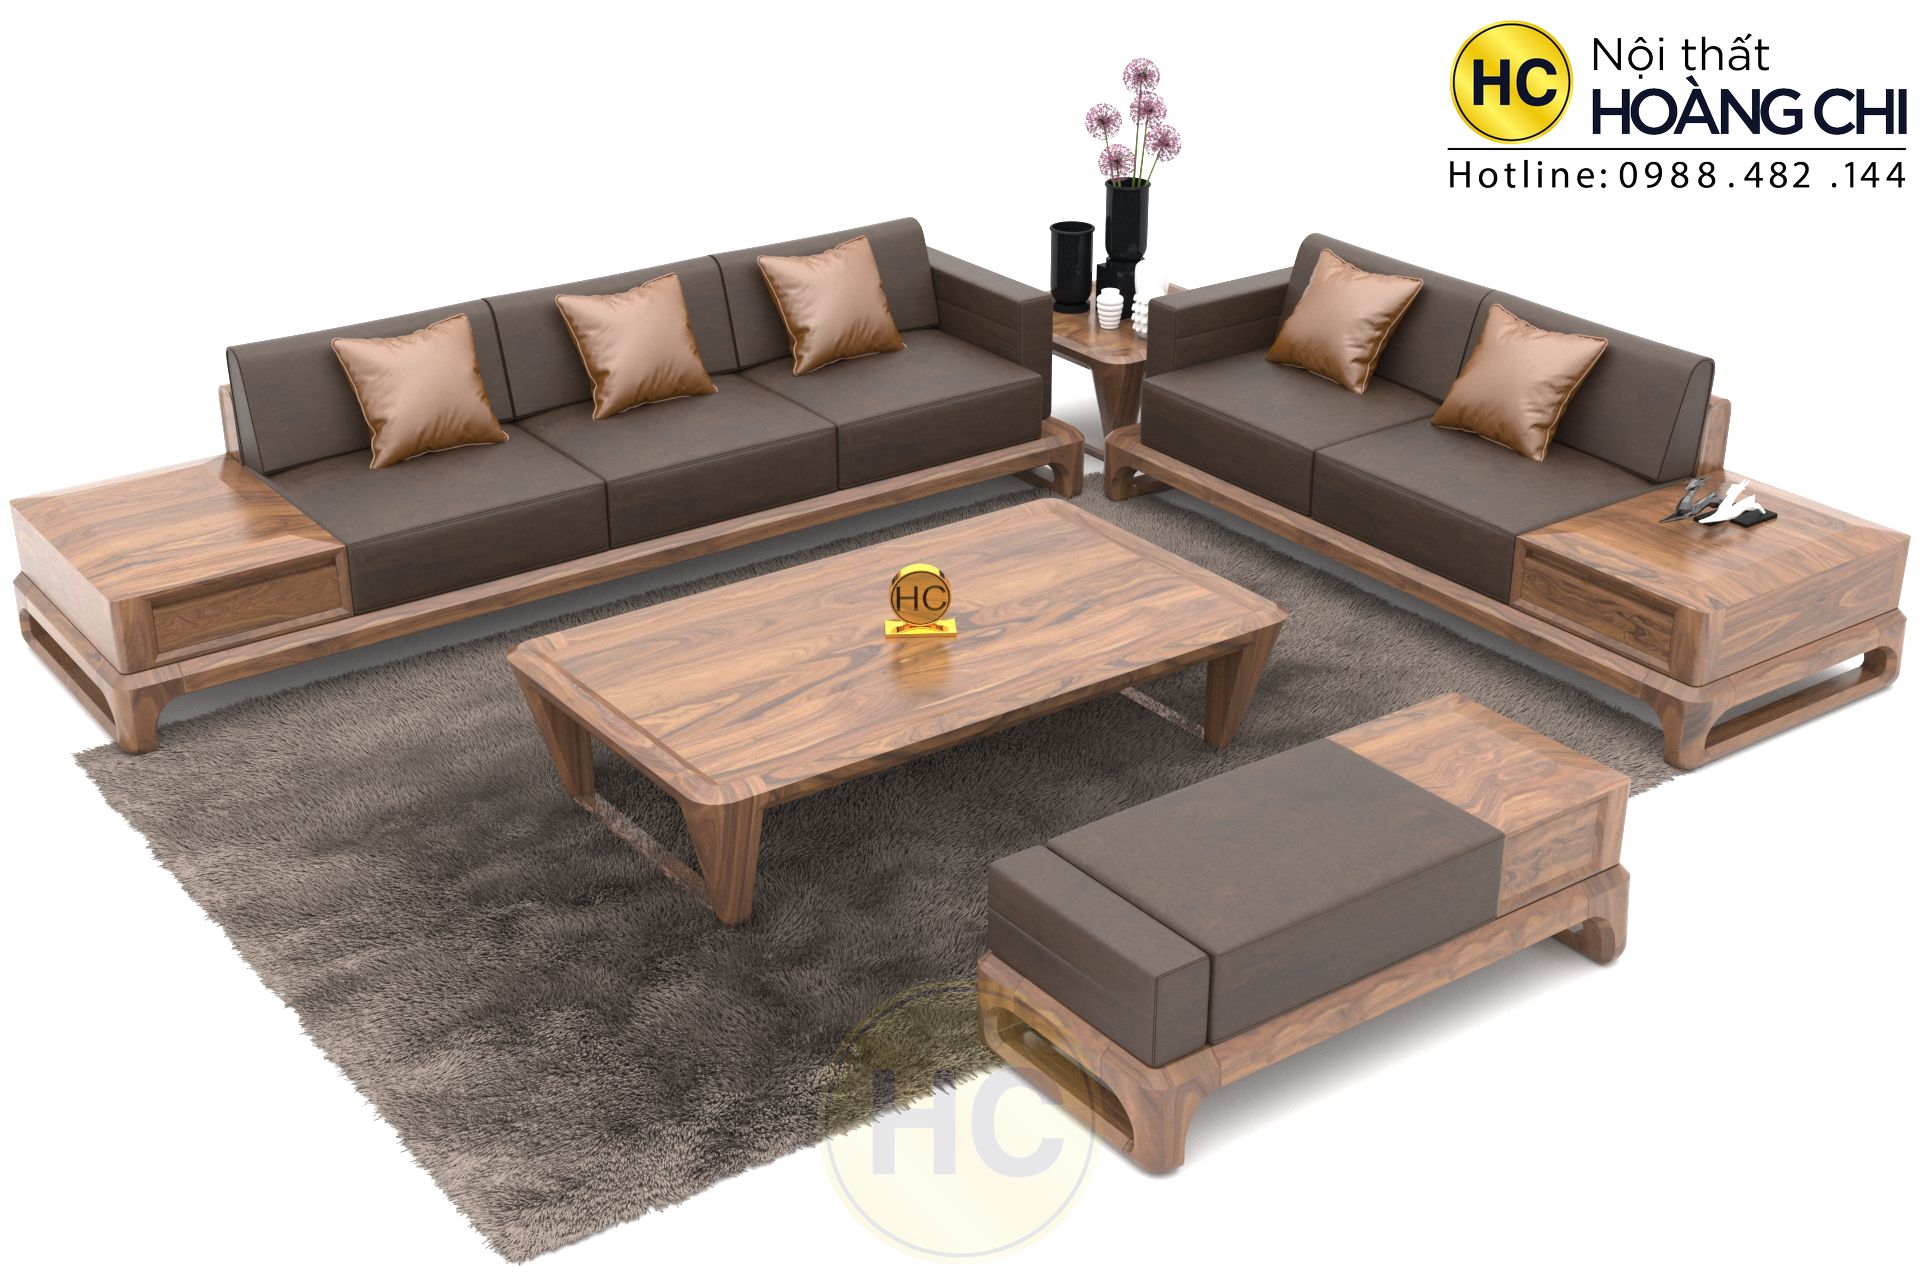 Bàn ghế sofa gỗ sẽ tạo nên sự khác biệt đáng kể cho không gian sống của bạn. Với vật liệu gỗ tự nhiên, sản phẩm không chỉ làm tăng tính thẩm mỹ mà còn mang đến sự thoải mái cho người sử dụng. Bạn sẽ cảm nhận được sự ấm áp và chân thật khi sử dụng bàn ghế sofa gỗ này.